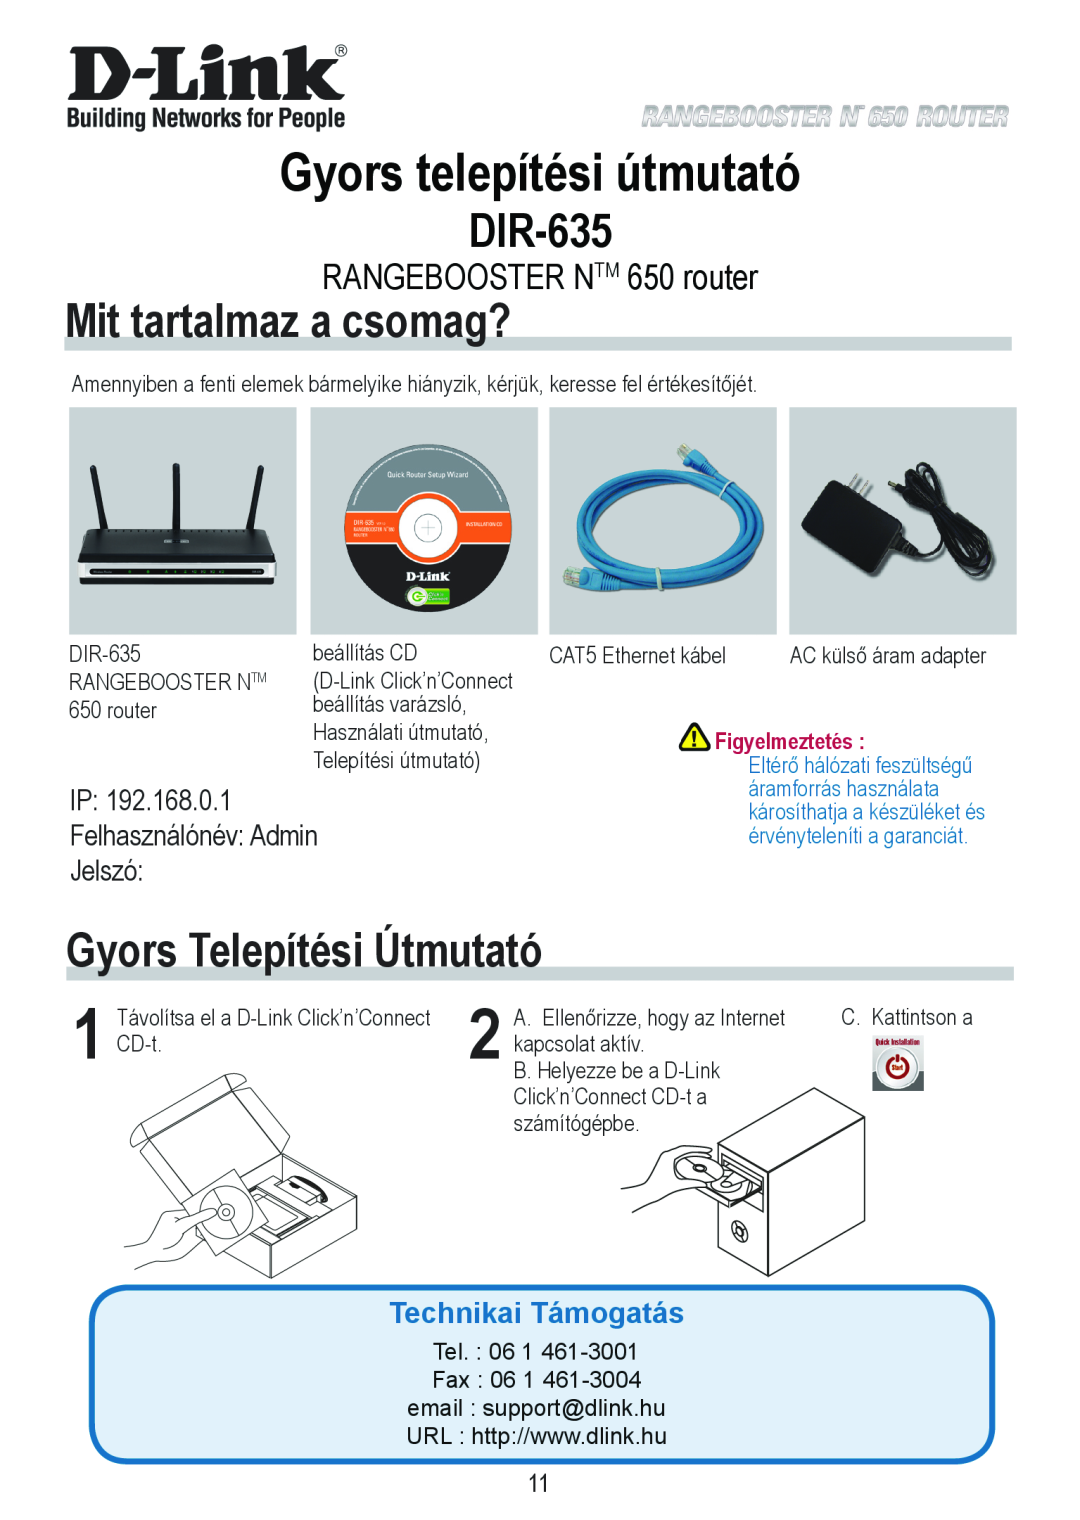 D-Link 650 Gyors telepítési útmutató, Mit tartalmaz a csomag?, Gyors Telepítési Útmutató, IP Felhasználónév Admin Jelszó 